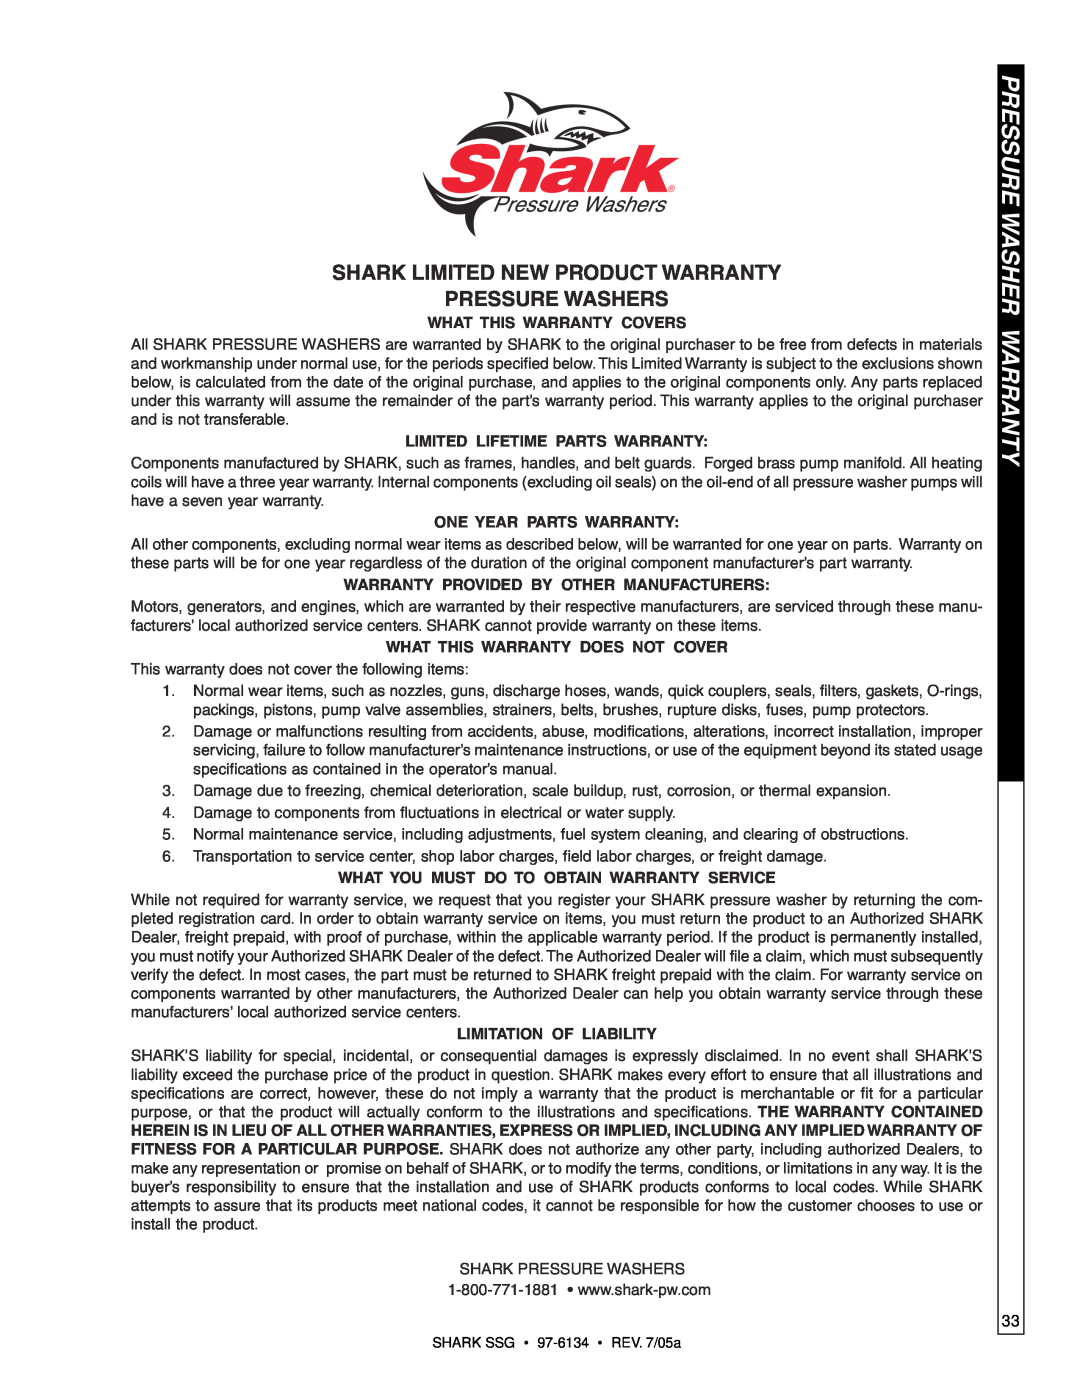 Shark SSG-503027E, SSG-503027G, SSG-503537E, SSG-503537G, SSG-603537E, SSG-603537G manual Pressure Washer Warranty 